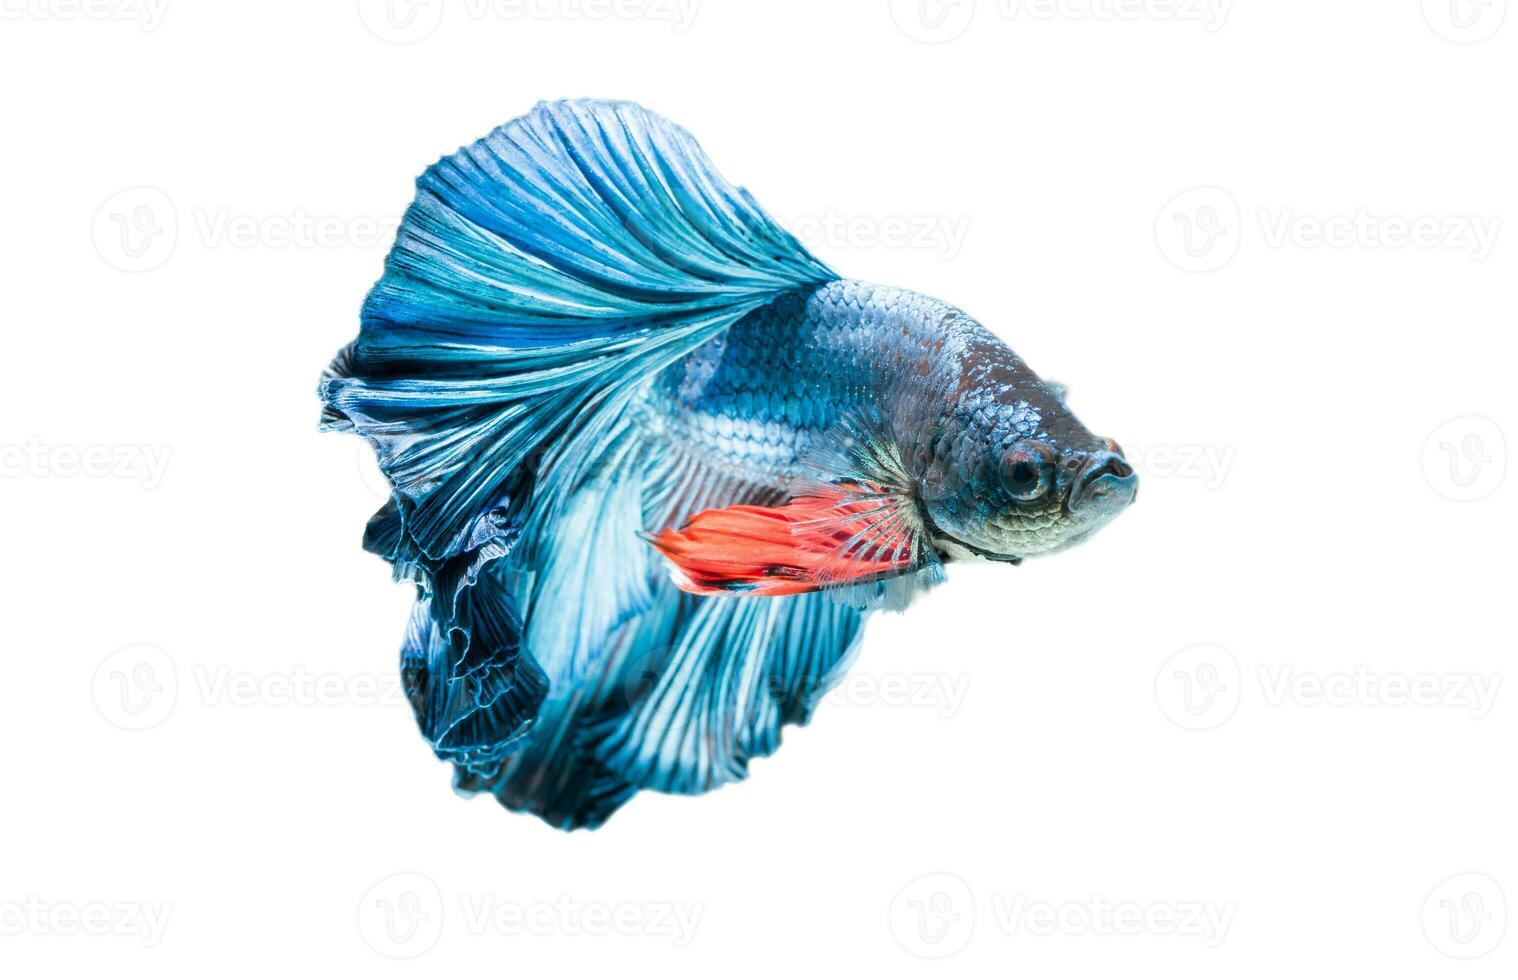 Blau Siamese Kampf Fisch, Betta prachtvoll. foto